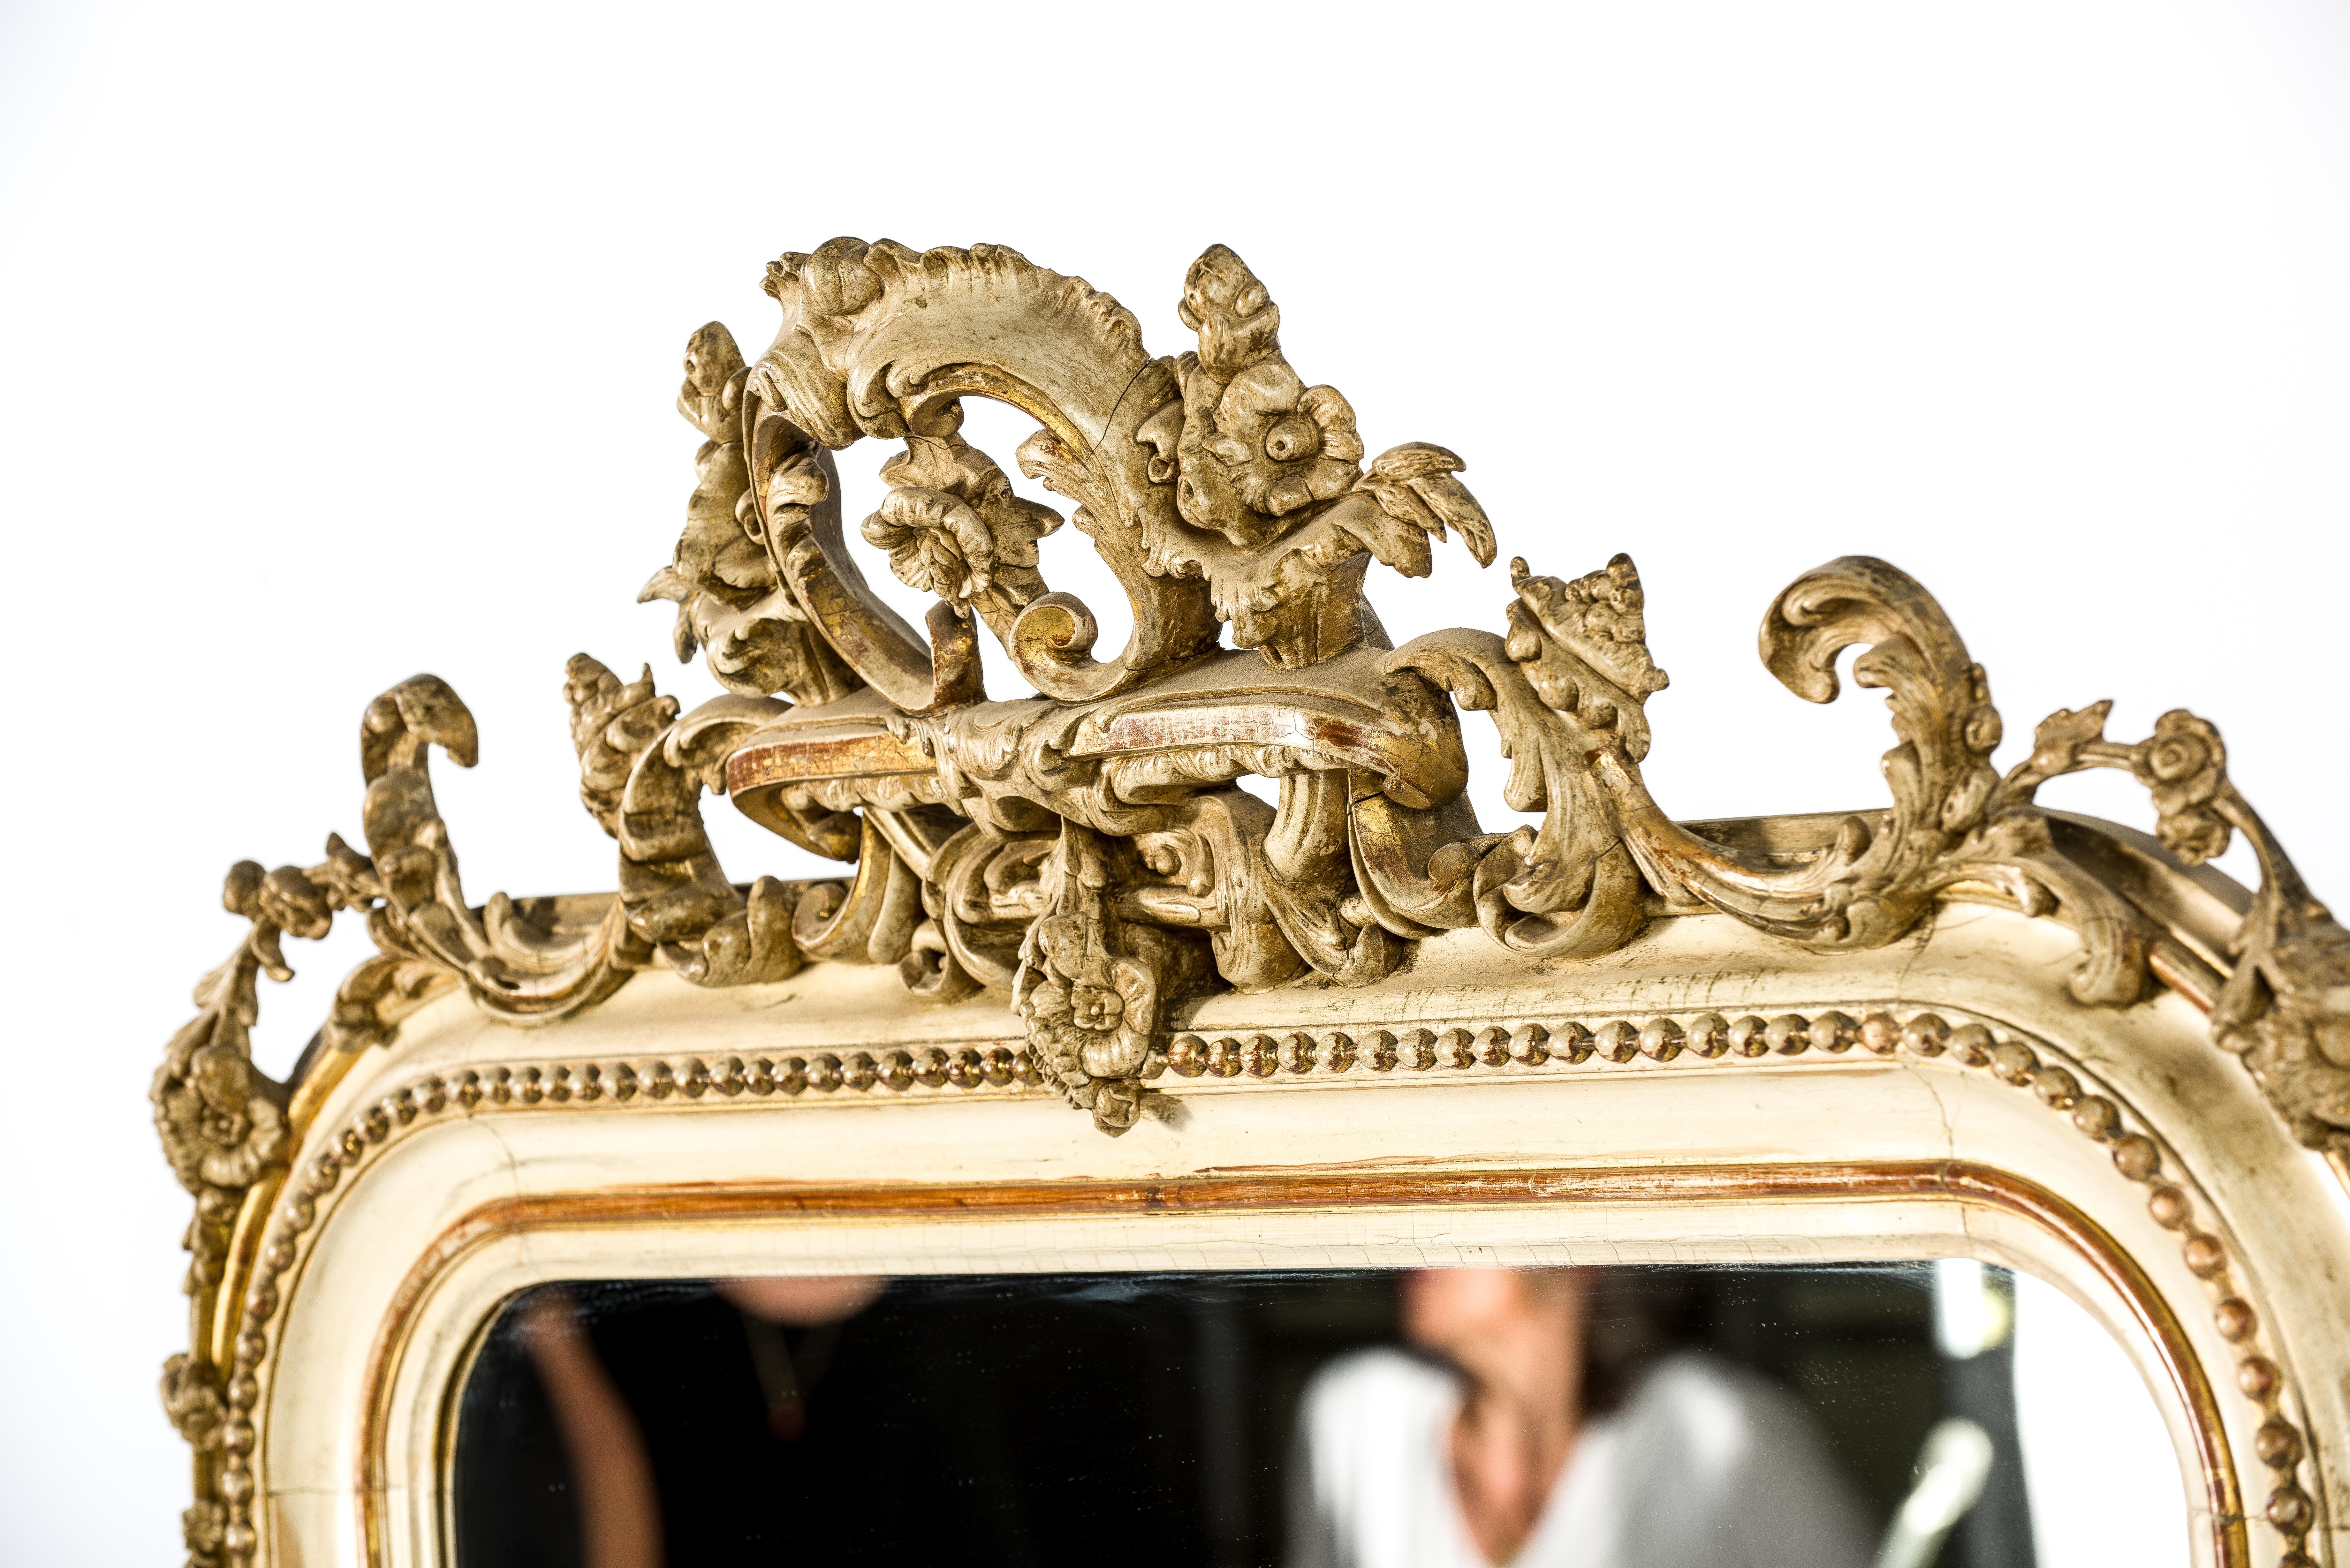 Un beau miroir ancien originaire de France, vers 1860. Le miroir présente les angles supérieurs arrondis typiques des miroirs français de Louis Philippe. Le miroir est orné d'une riche crête et d'ornements très détaillés dans les deux coins